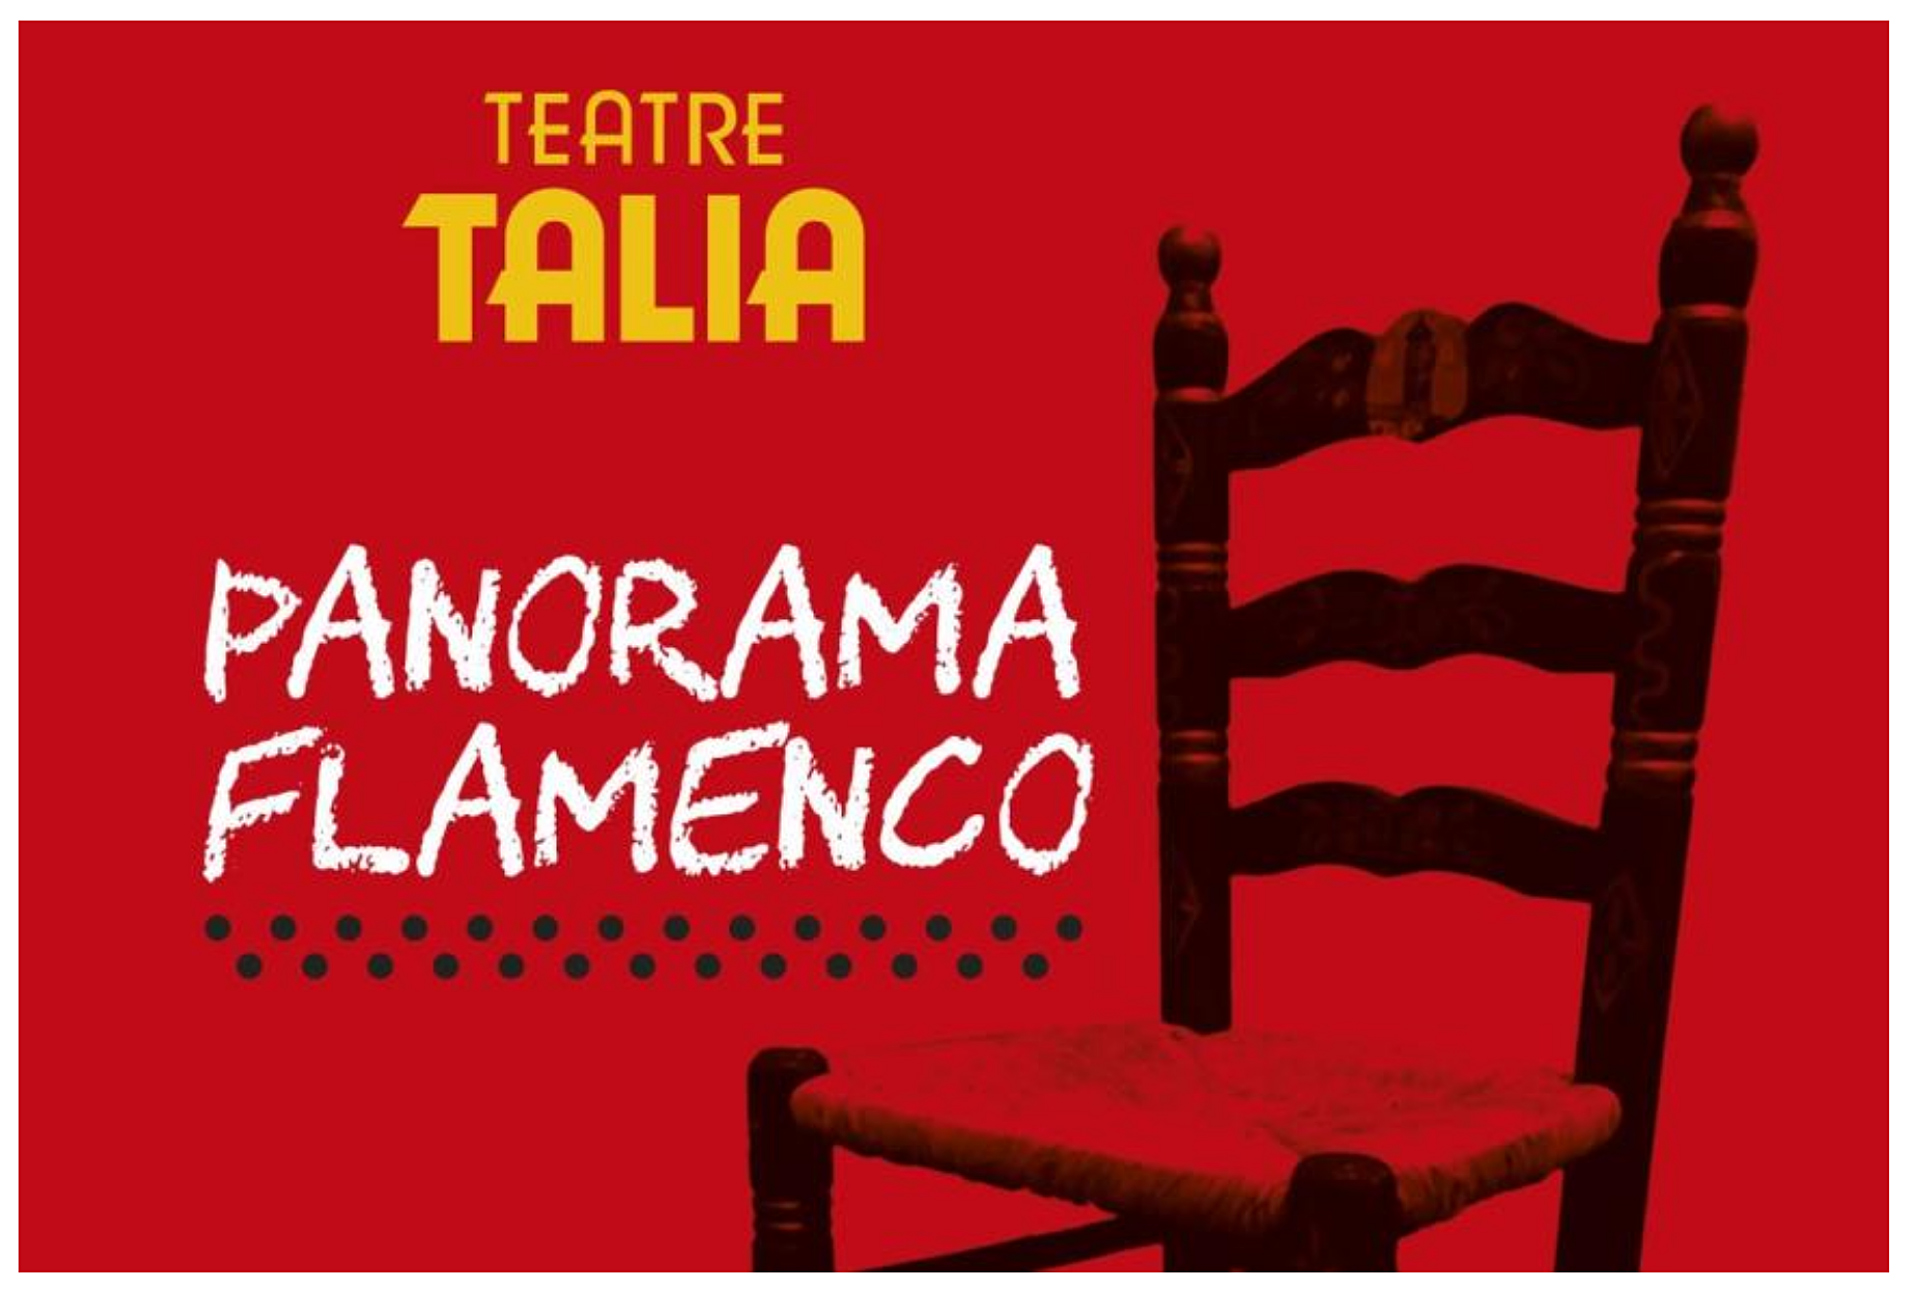 Descubre la nueva temporada de “PANORAMA FLAMENCO” en el Teatre Talia